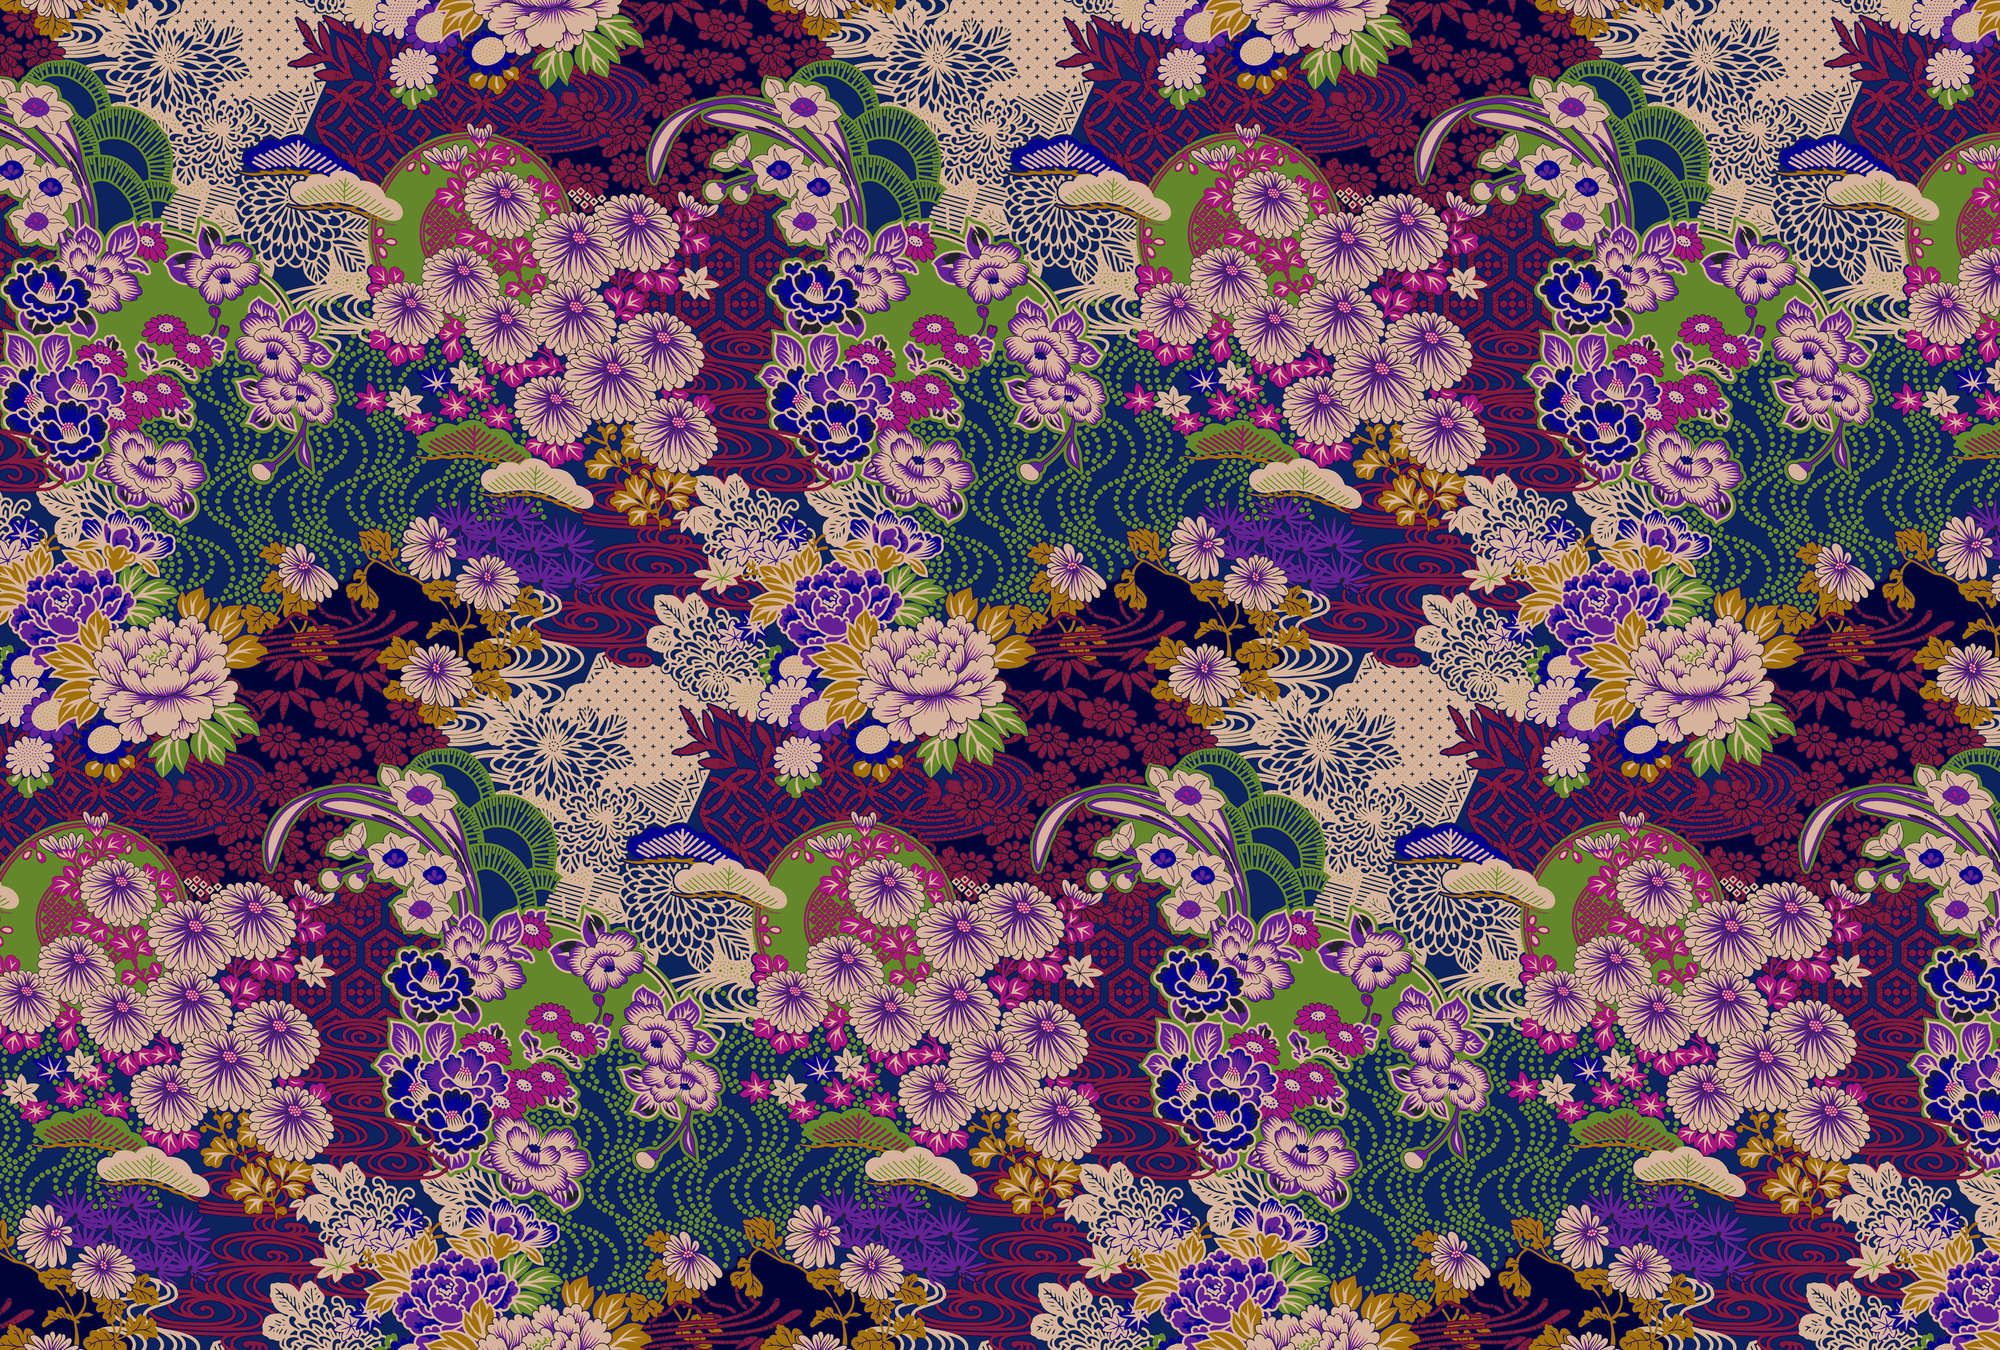             papier peint en papier »kimo 2« - art floral abstrait - violet, vert | Intissé lisse, légèrement nacré
        